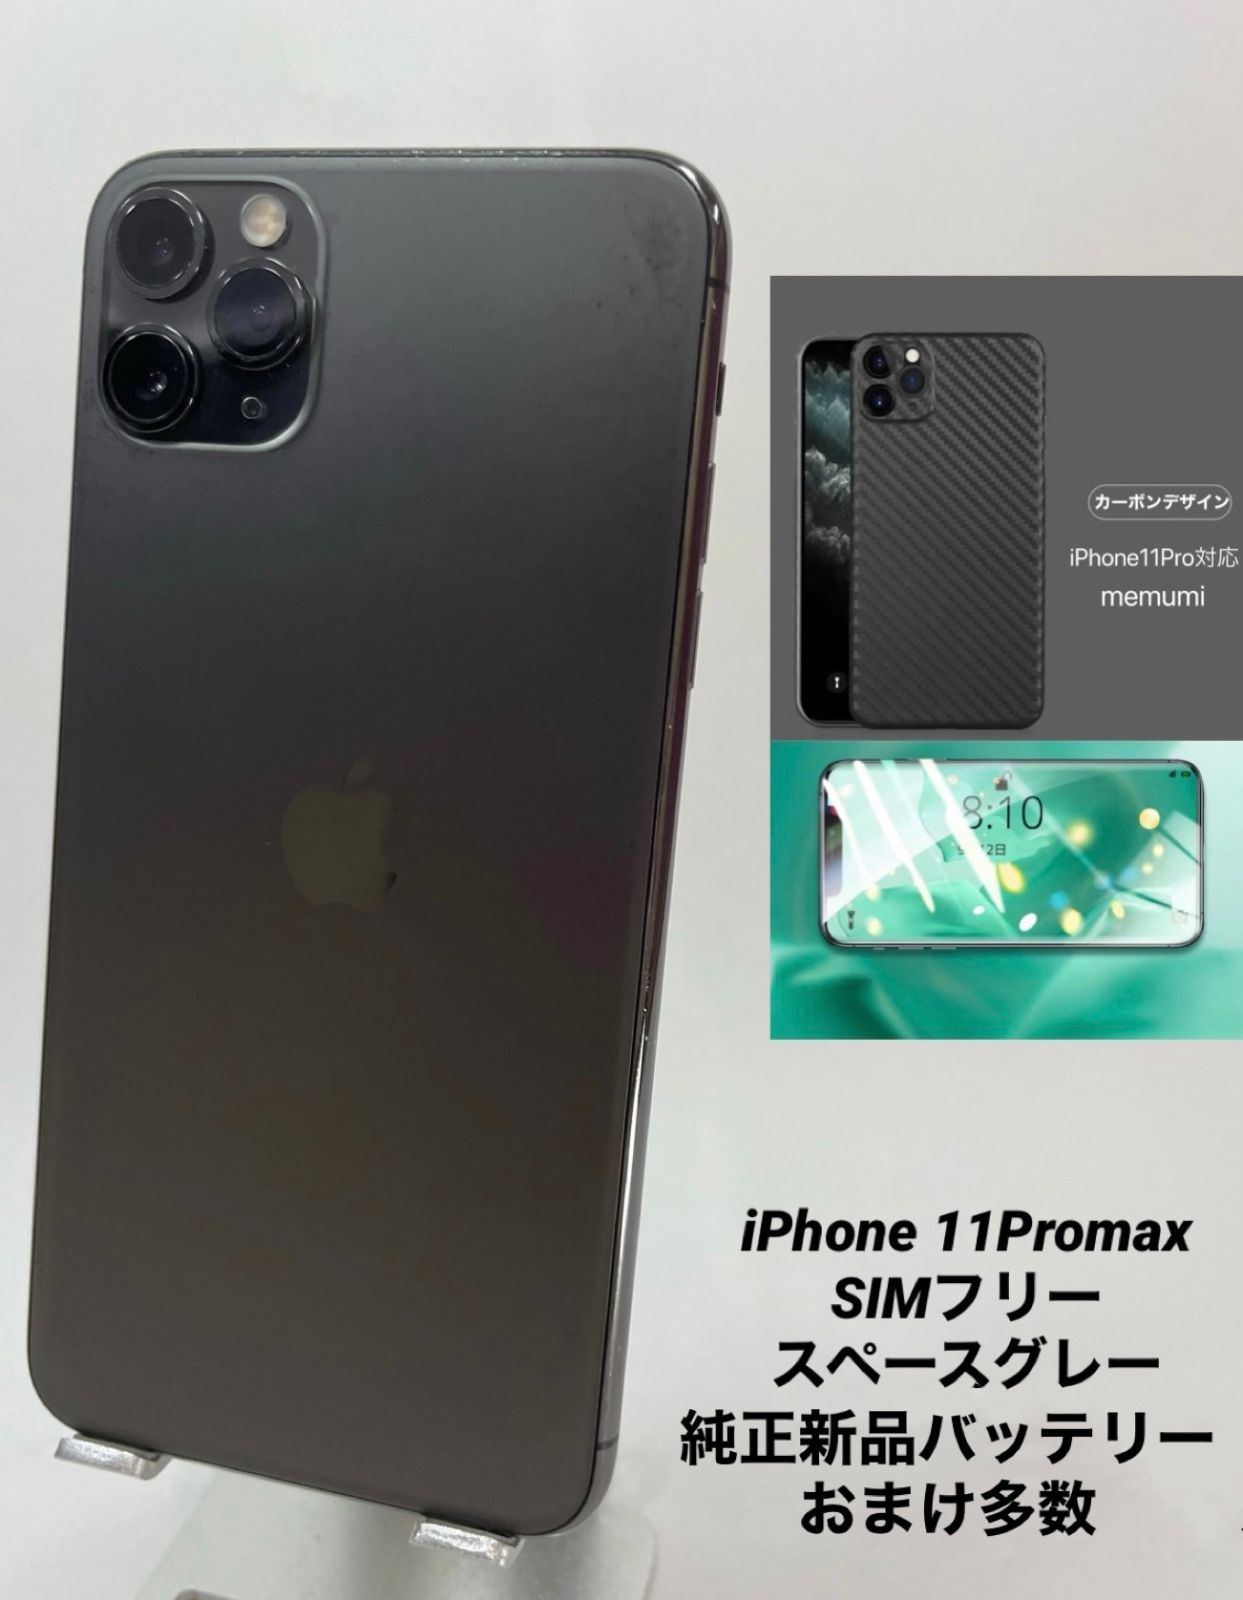 iPhone X スペースグレー 256GB ☆美品・おまけ付き☆ - 携帯電話